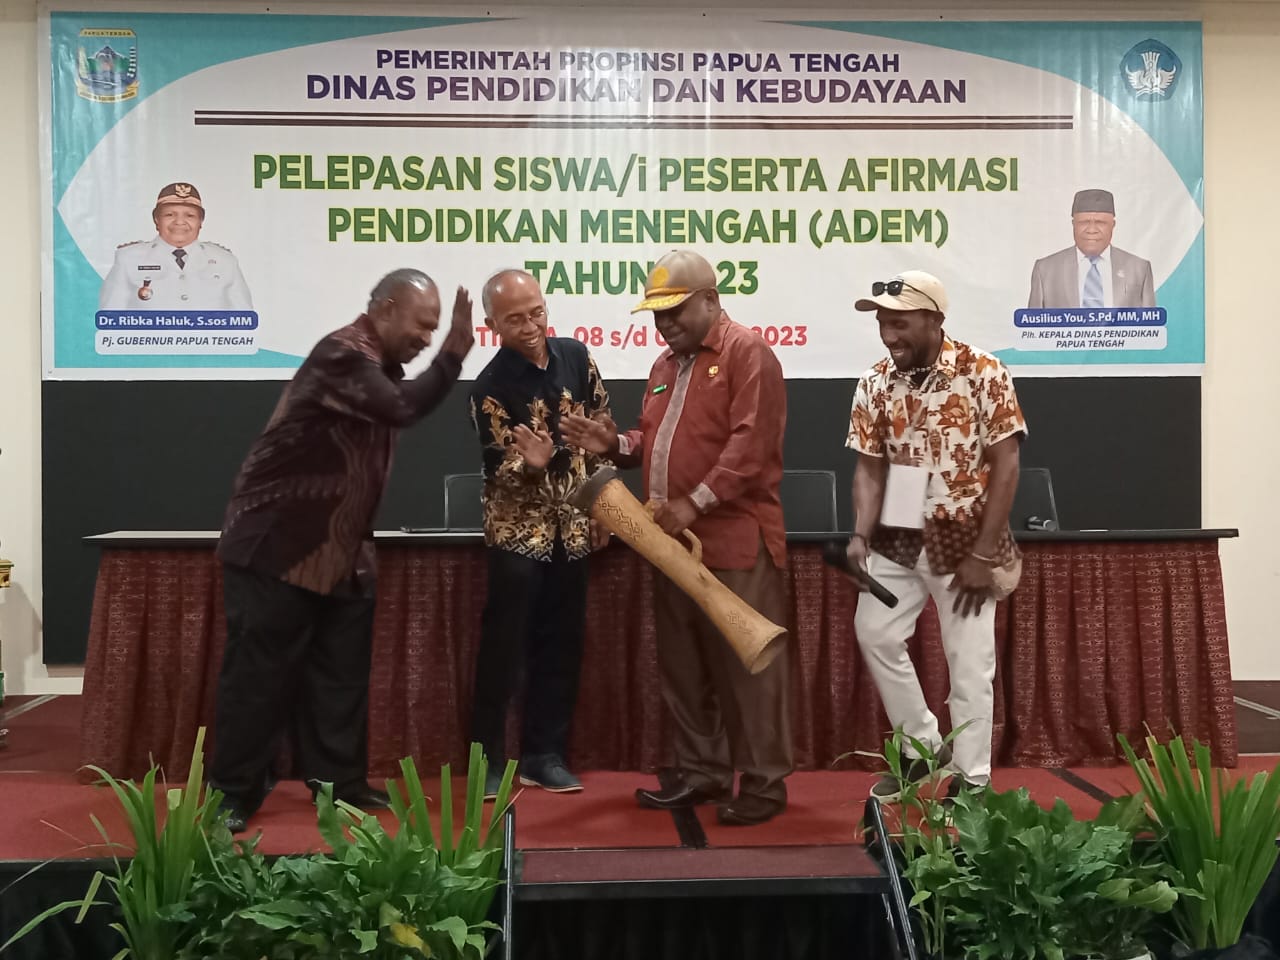 Pemerintah Propinsi Papua Tengah, Lepas 97 Peserta AFIRMASI ADEM Pertama Tahun 2023.